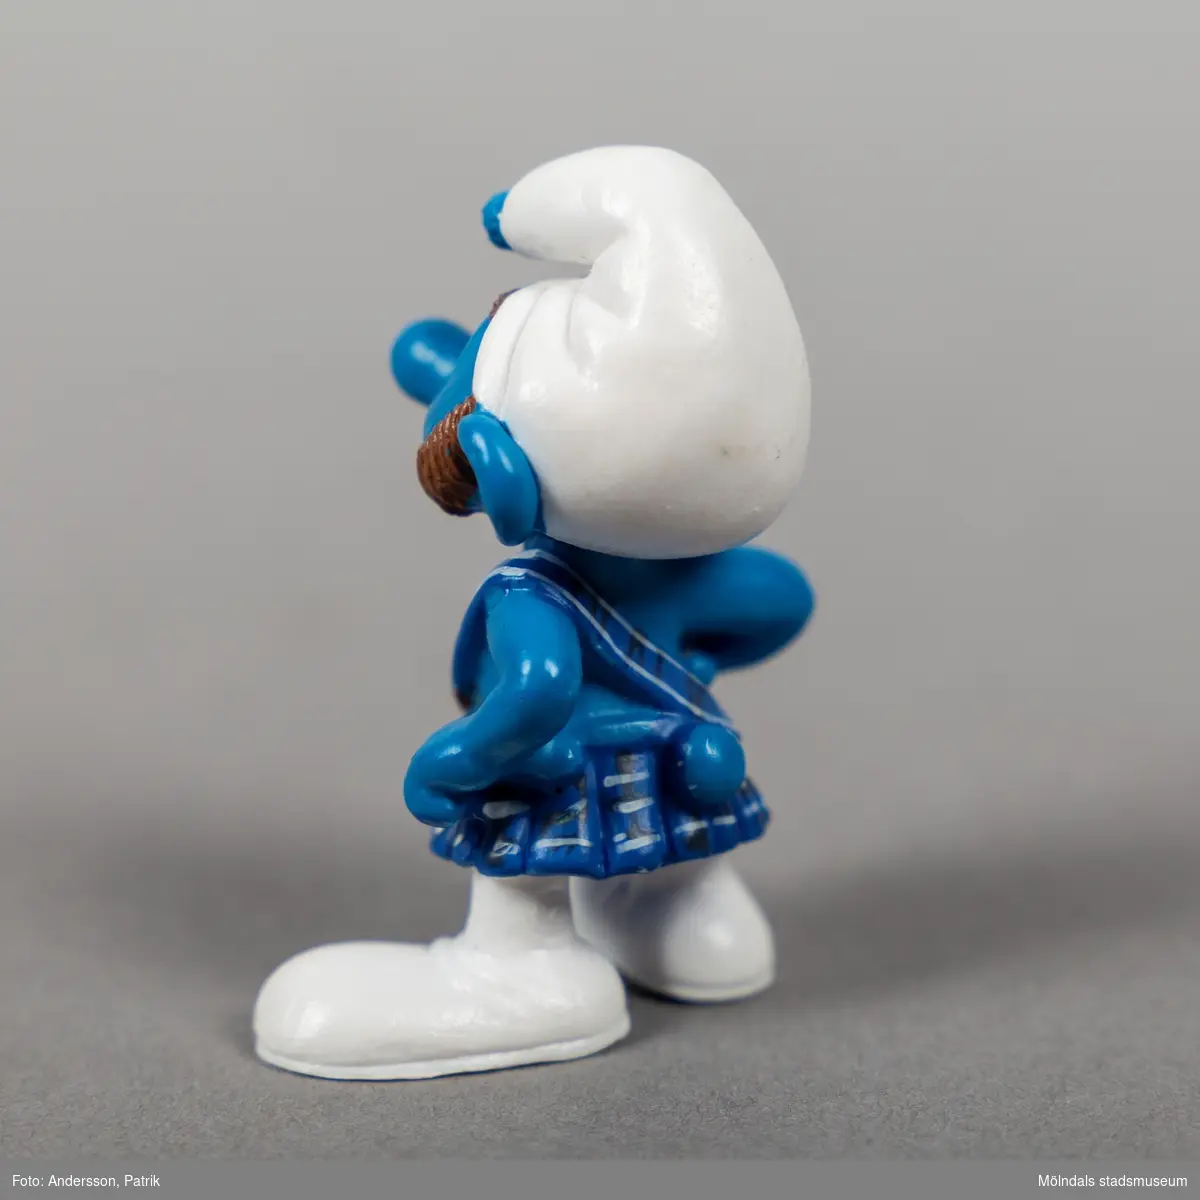 Tomteliknande figur som kallas Smurf, med blå kropp, vit luva och vita byxor samt blårutig kilt. Figuren har rödlätta ögonbryn och polisonger. 

Smurfarna eller Smurferna (franska: Les Schtroumpfs) är en belgisk tecknad serie som kretsar kring en grupp blå varelser med samma namn. Det tomteliknande folket skapades i slutet av 1950-talet av den belgiske serieskaparen Pierre "Peyo" Culliford.

Tuffsmurfen förekommer inte alls i originalserien eller i de tecknade serierna från 1980-talet. Han gör sin debut först 2011 i filmen Smurfarna 2.